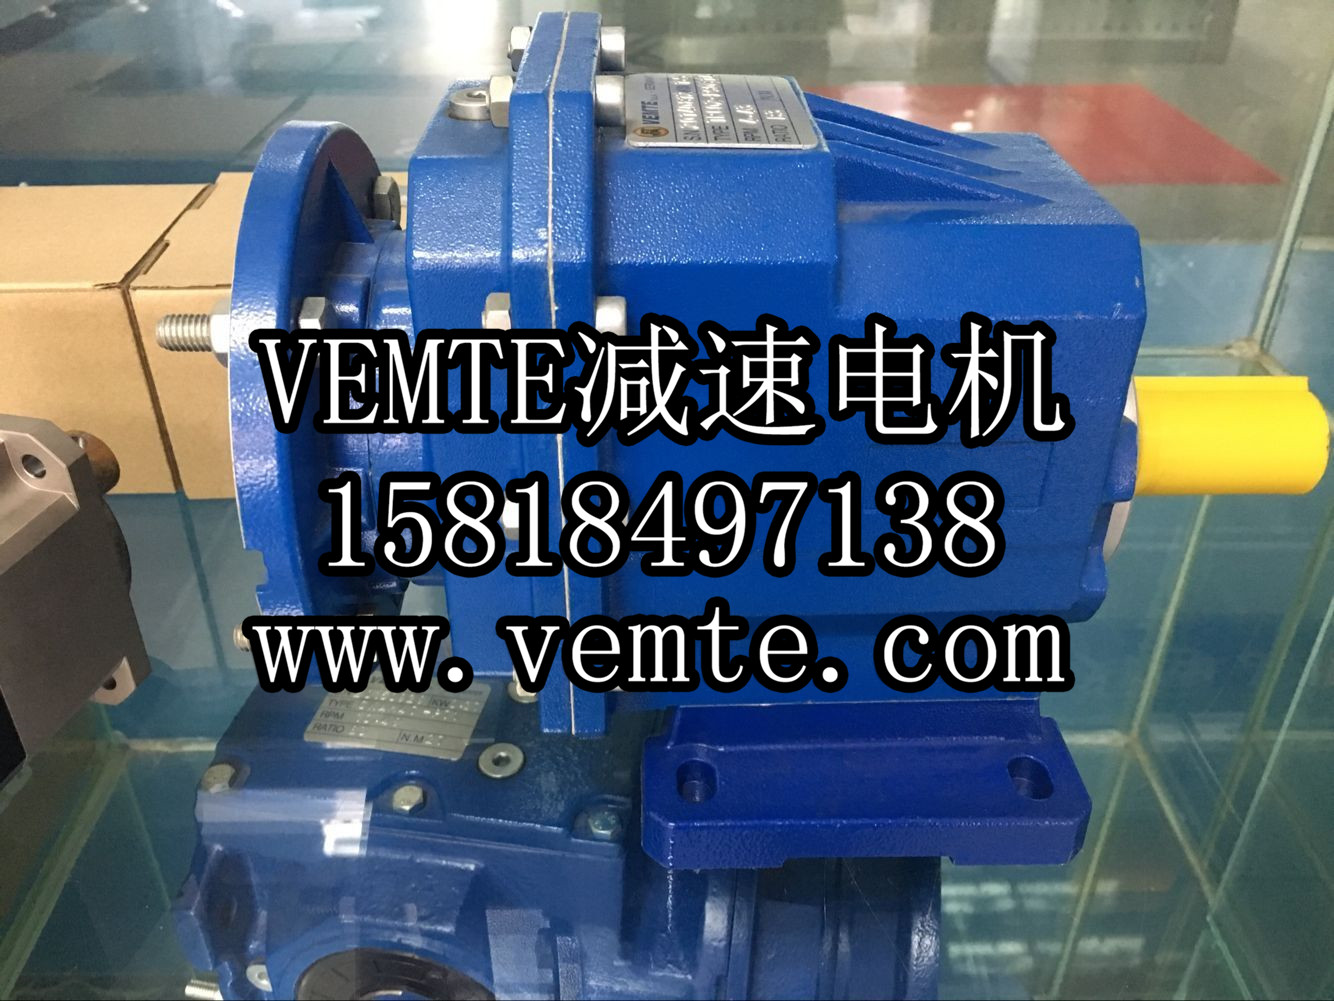 VEMT太阳集团7237网站
太阳
出产厂家 (8)